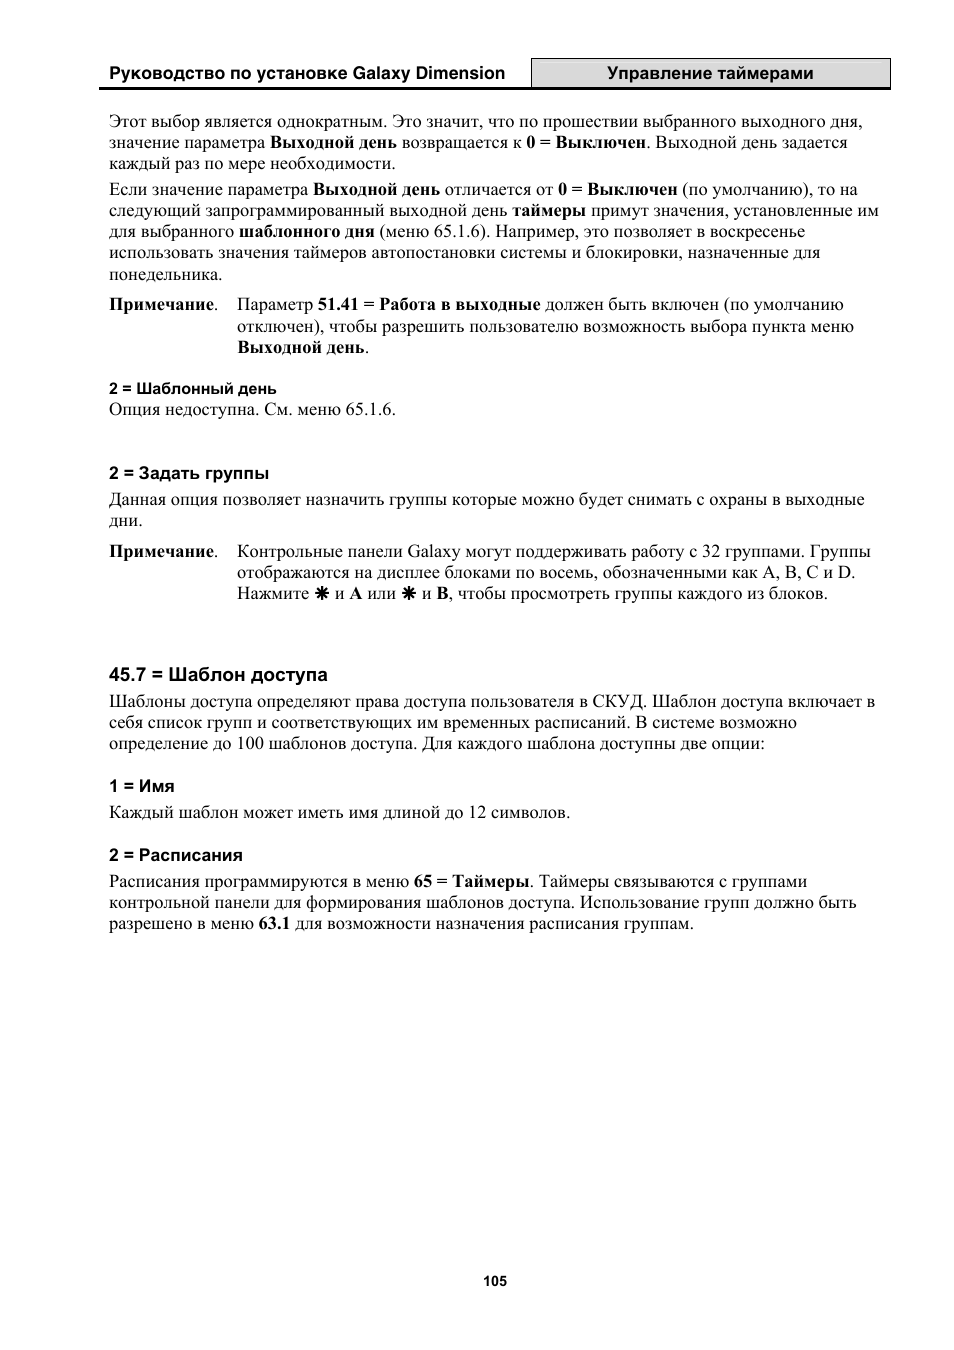 Инструкция по эксплуатации Honeywell Руководство по установке контрольных панелей серии Galaxy Dimension | Страница 105 / 260